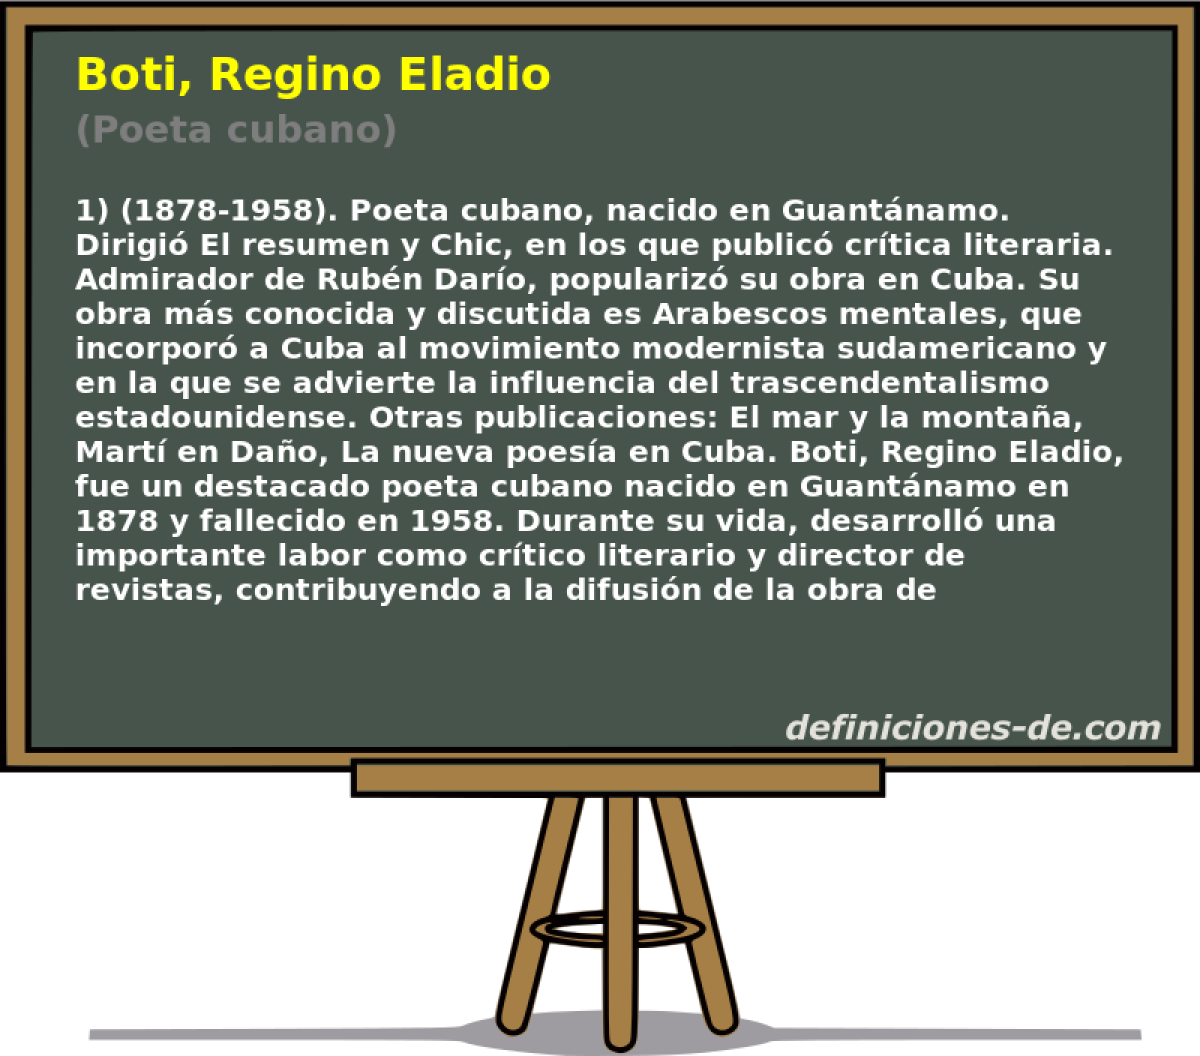 Boti, Regino Eladio (Poeta cubano)